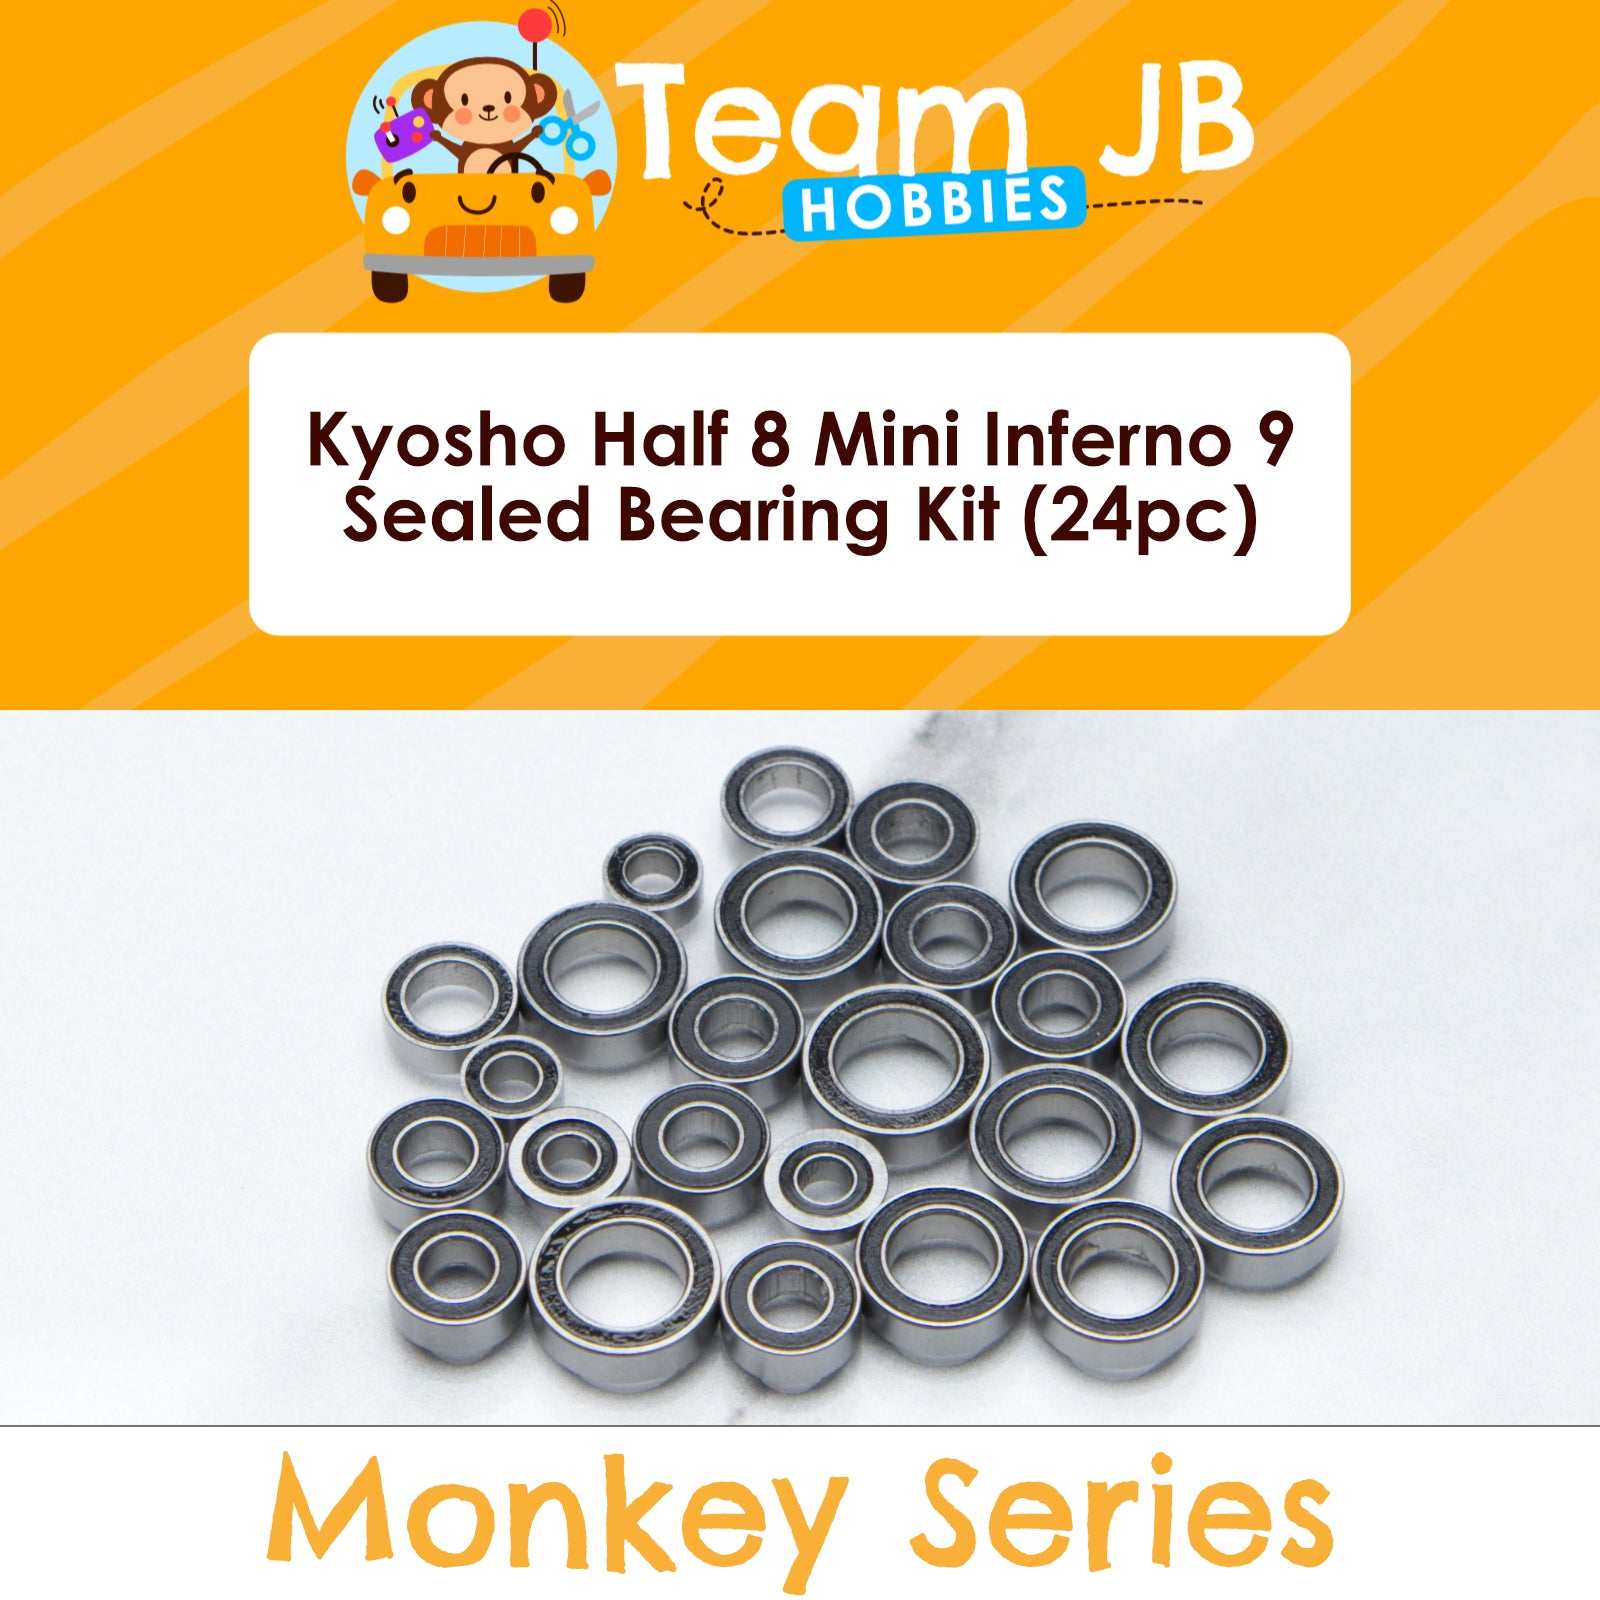 Kyosho Half 8 Mini Inferno 9 - Sealed Bearing Kit